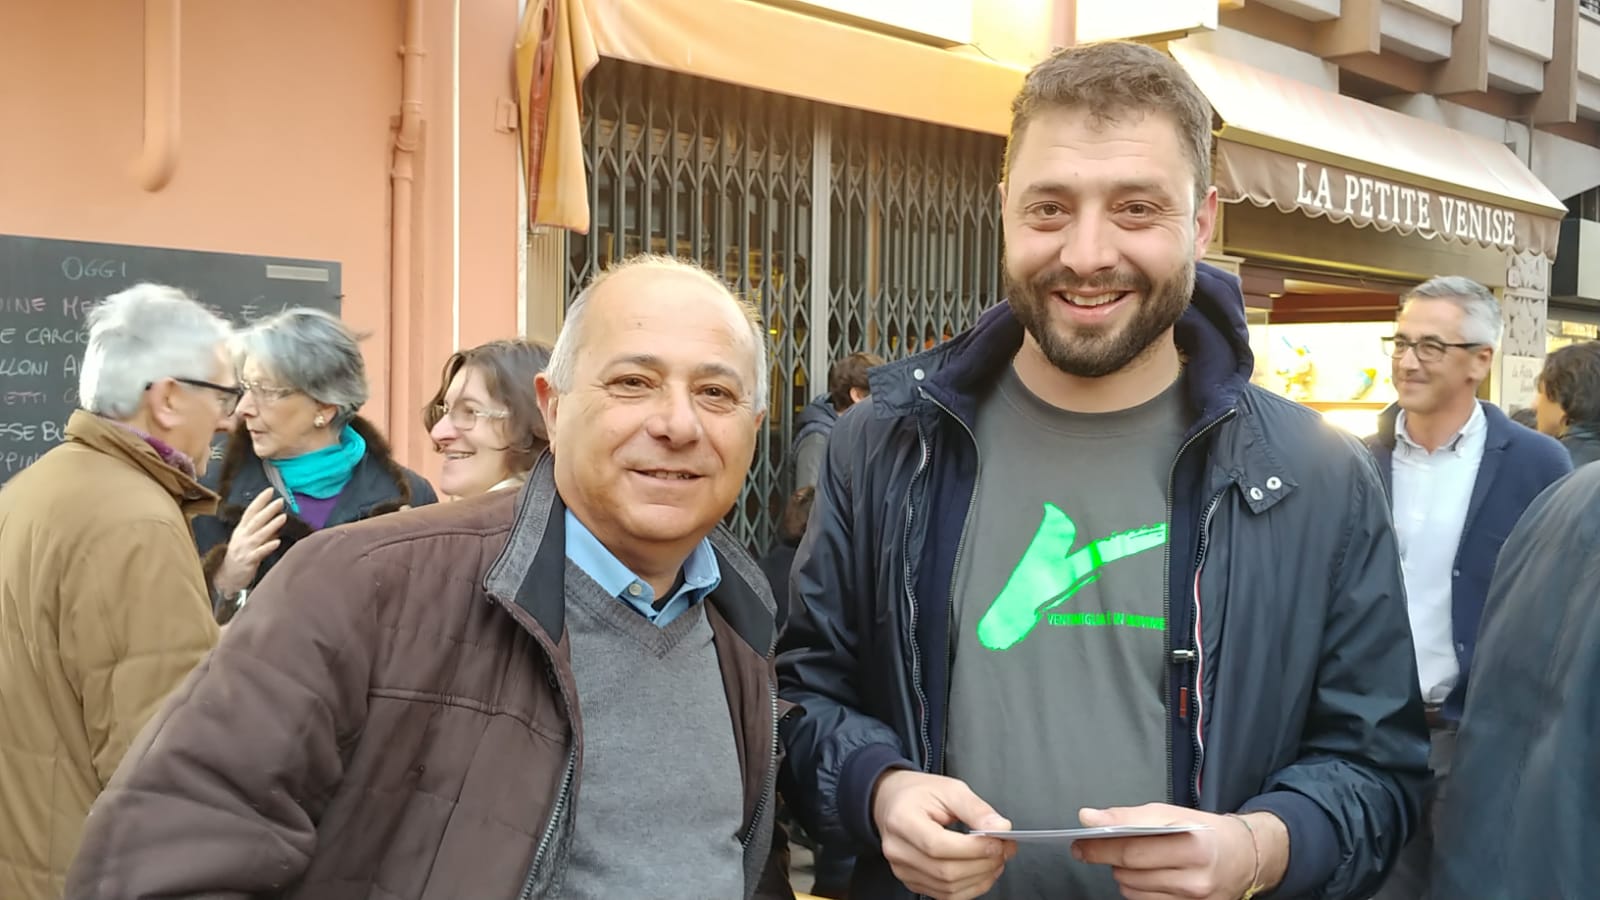 Enrico Ioculano Ventimiglia in movimento anuncio candidato sindaco 2019 Gabriele Chiappori Domenico De Leo